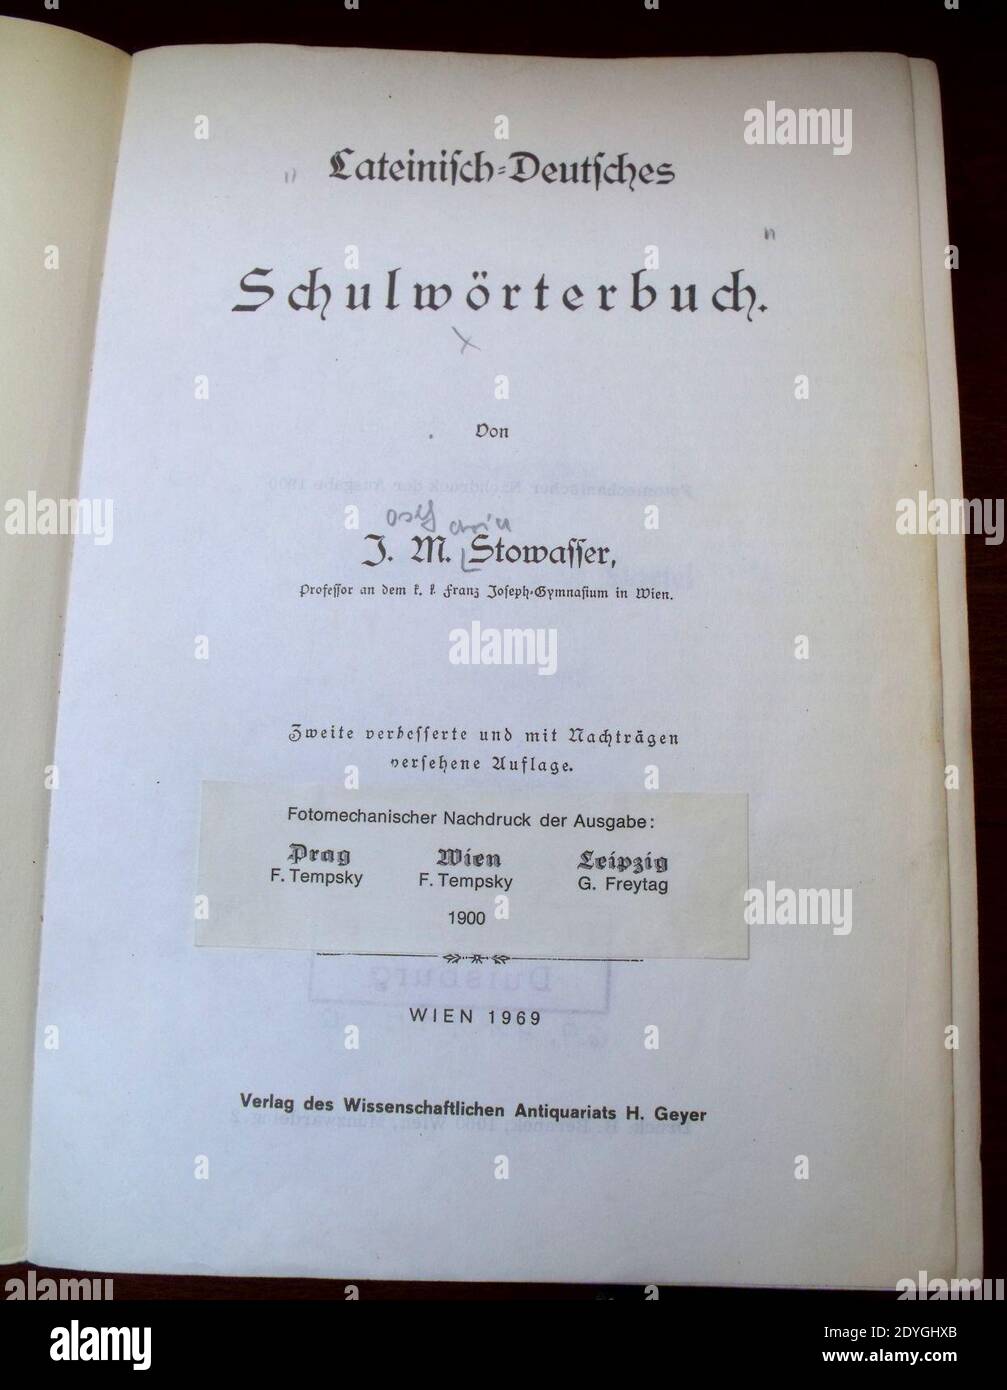 Lateinisch-Deutsches Schulwörterbuch JM Stowasser (1900). Foto Stock